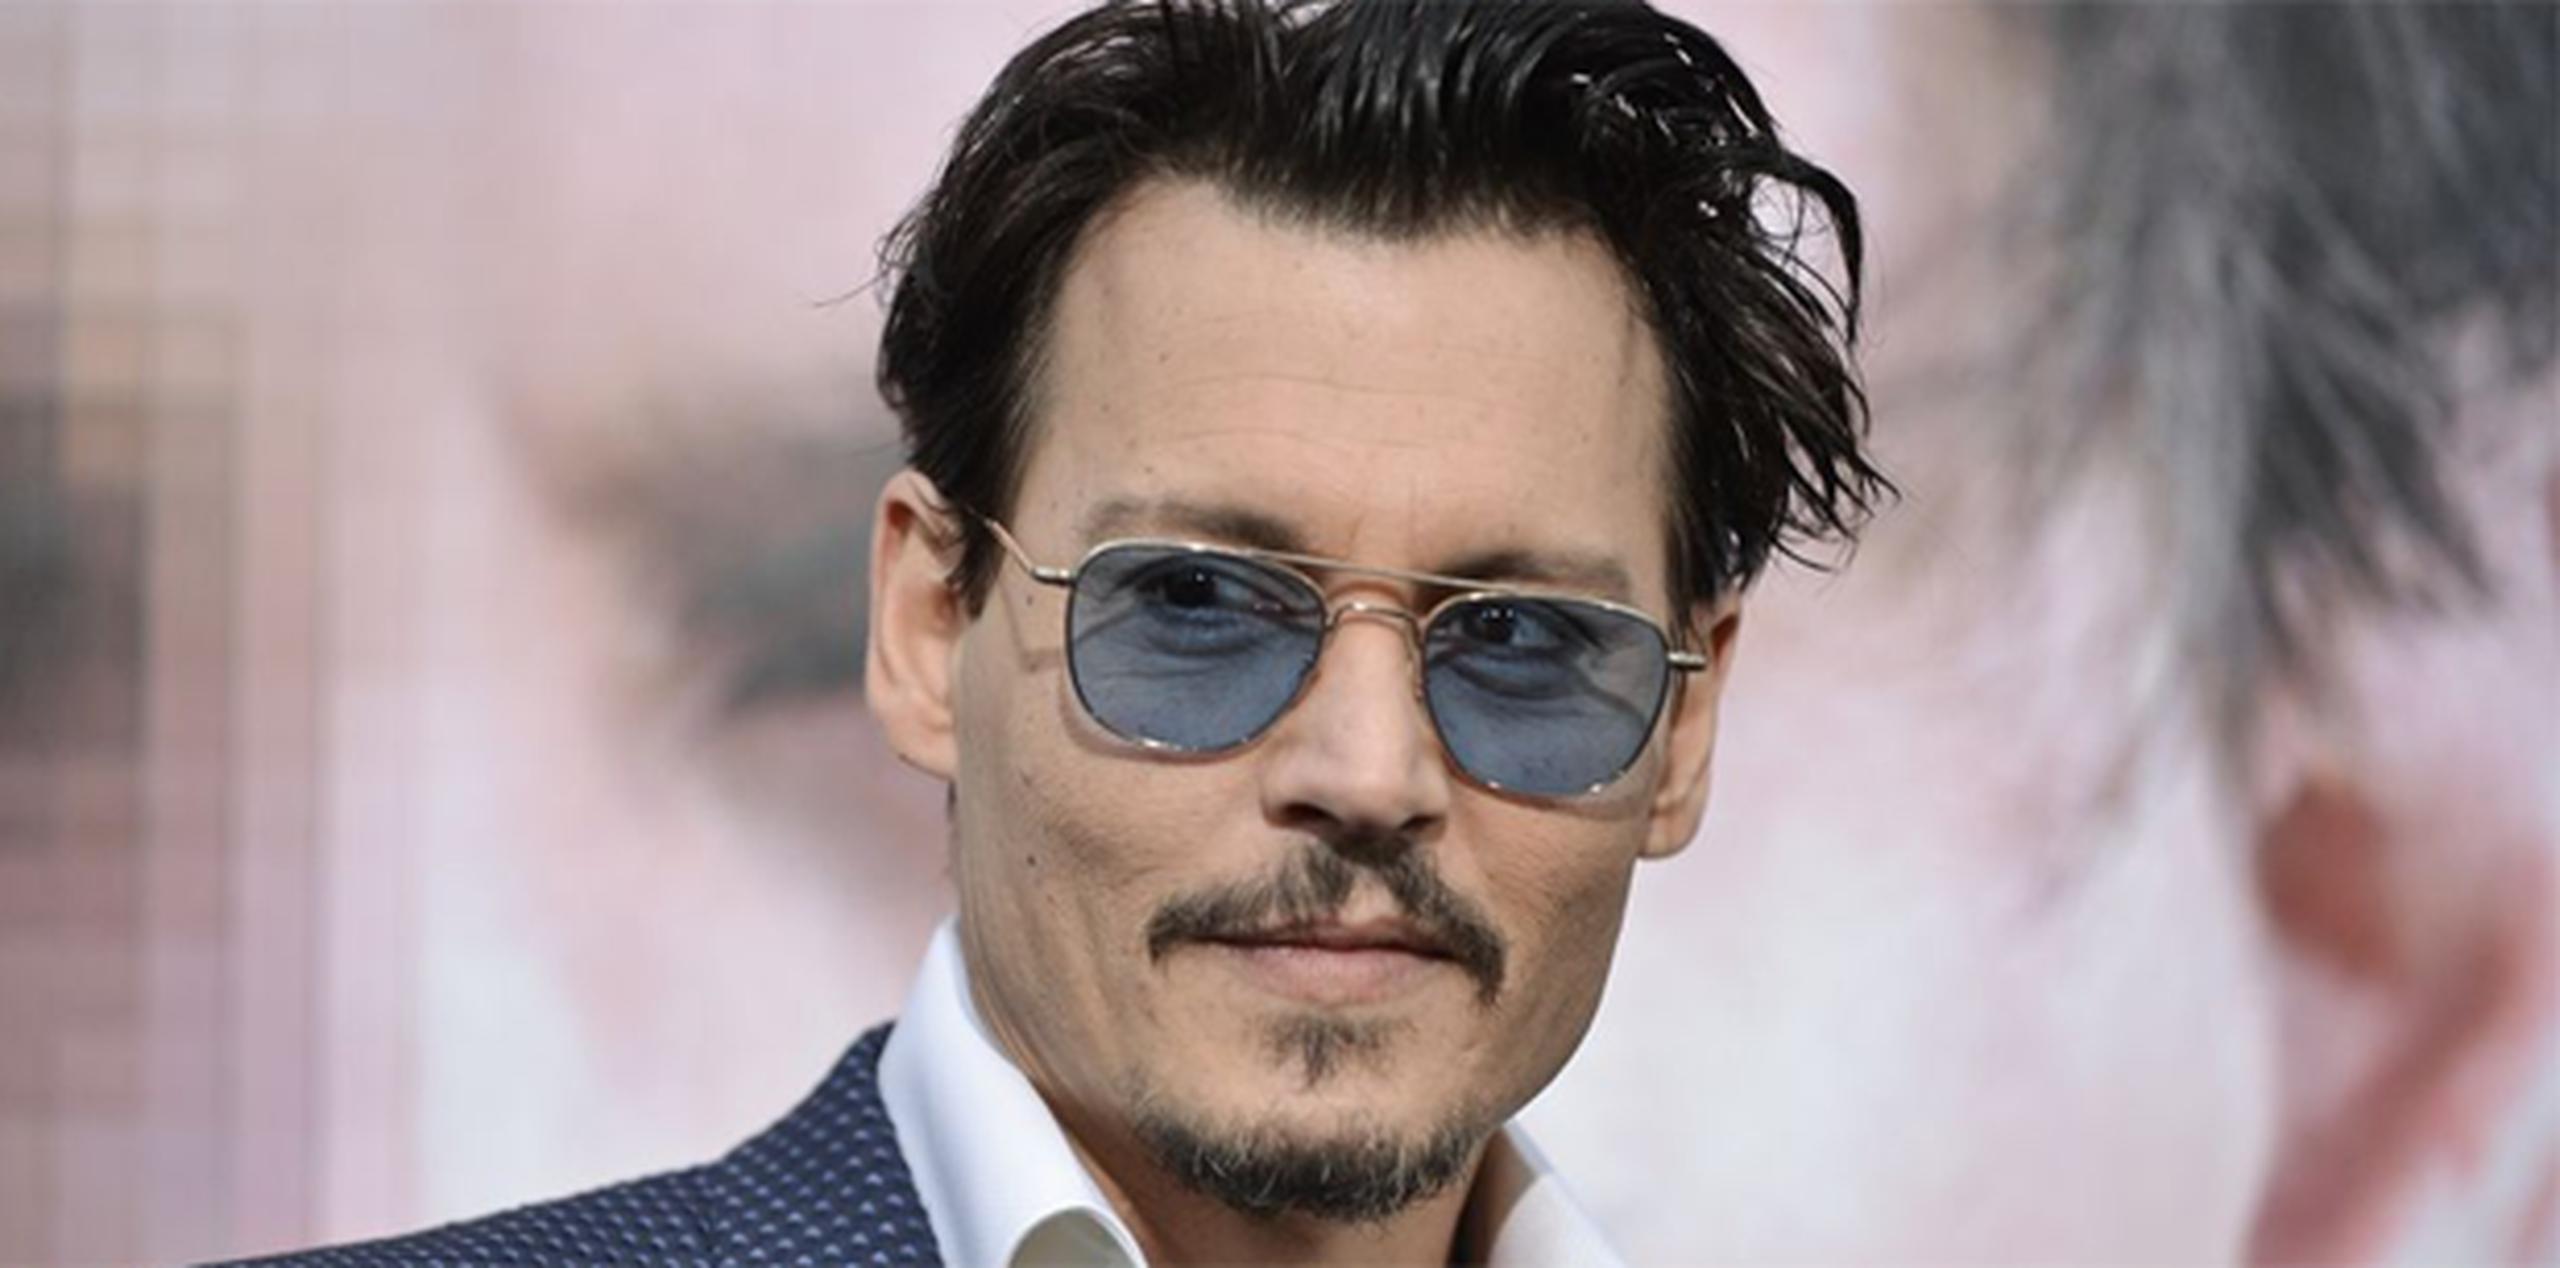 Depp viajó a Australia para filmar la quinta entrega de la serie "Pirates of the Caribbean".